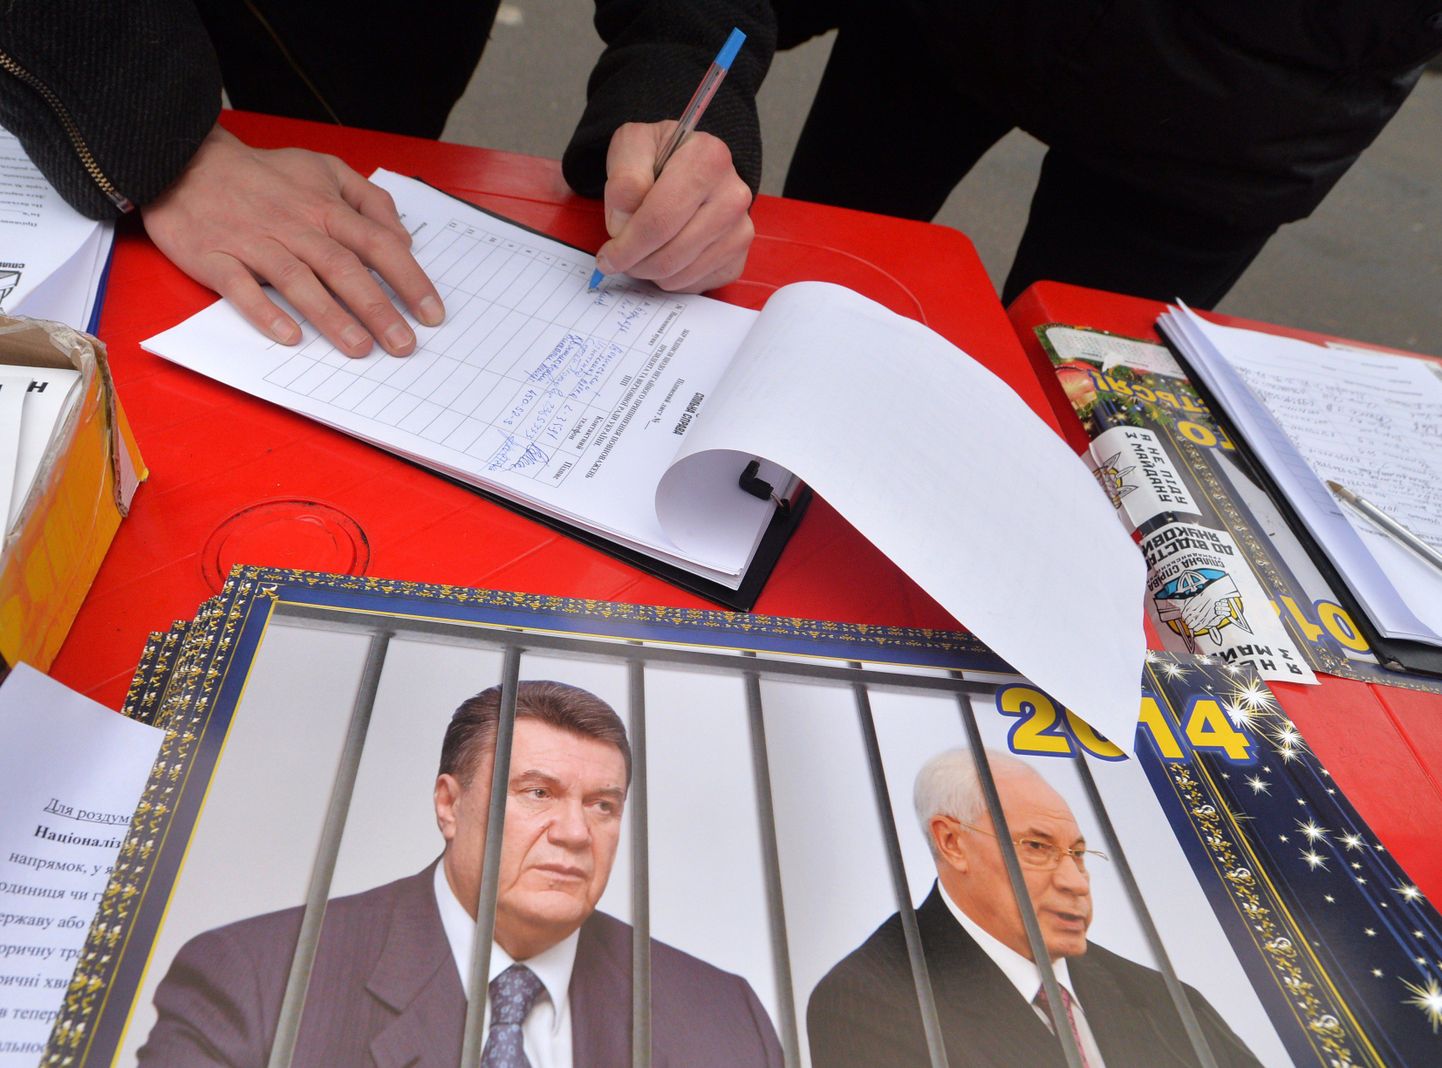 Mees allkirjastab poliitilist petitsiooni, millega nõutakse  president Viktor Janukovõtsi ja peaminister Azarovi tagasiastumist. Foto tehti täna Iseseisvuse väljakul Kiievis.